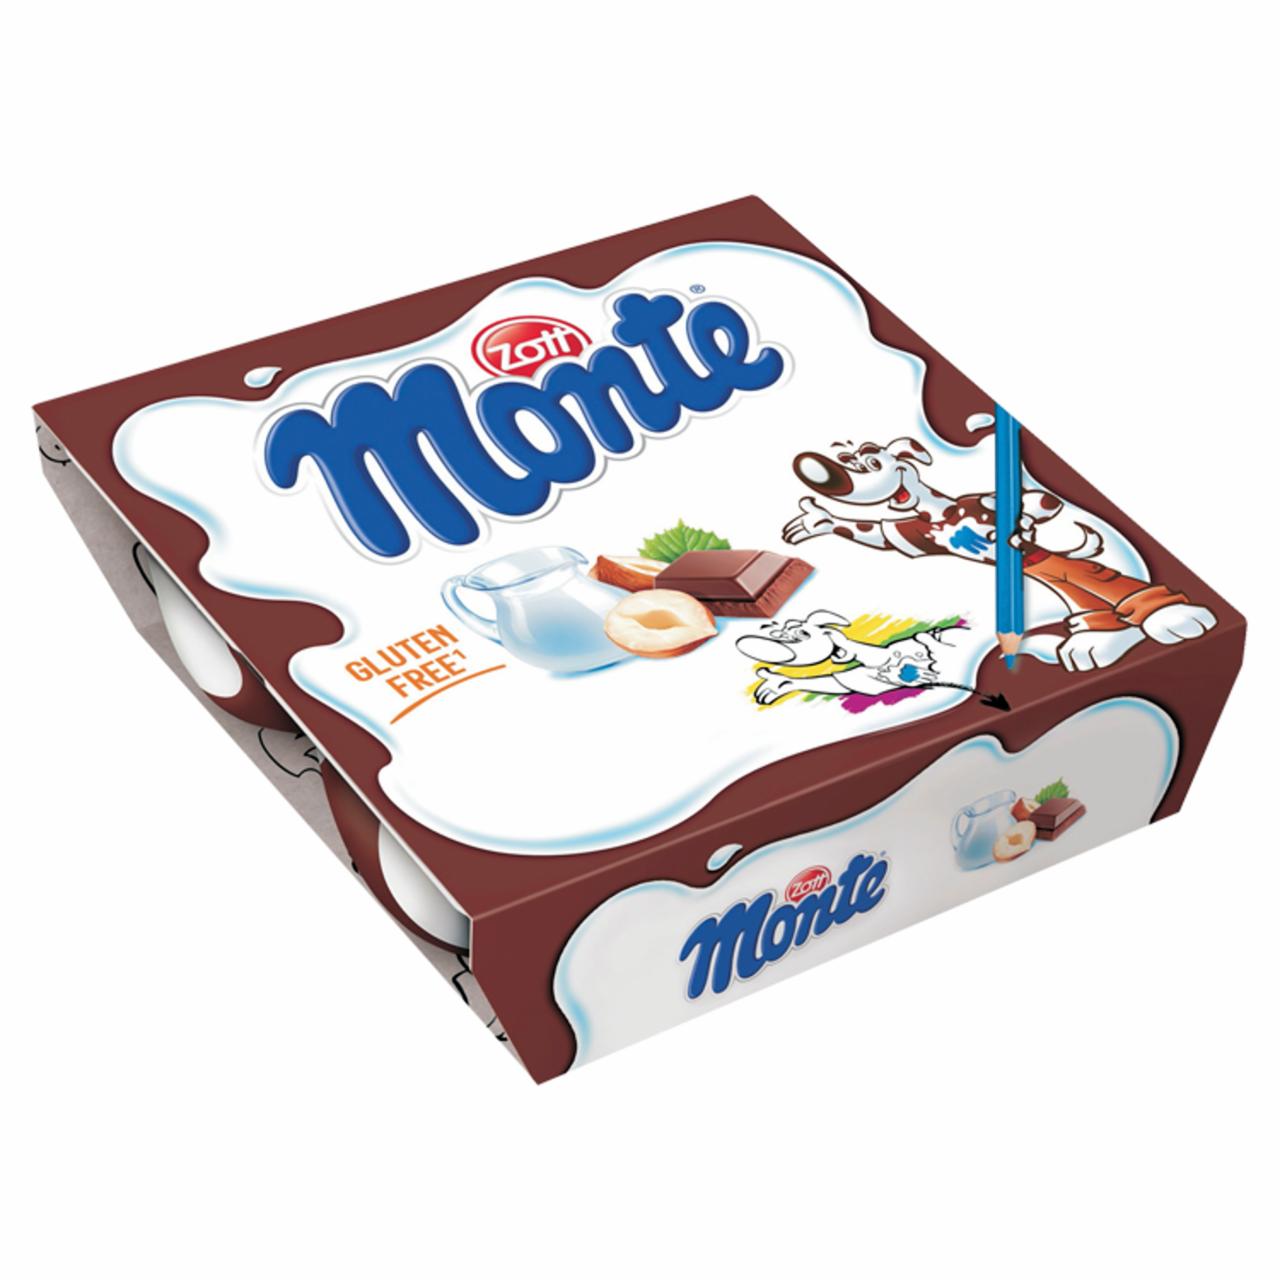 Képek - Zott Monte csokoládés, mogyorós tejdesszert 4 x 55 g (220 g)